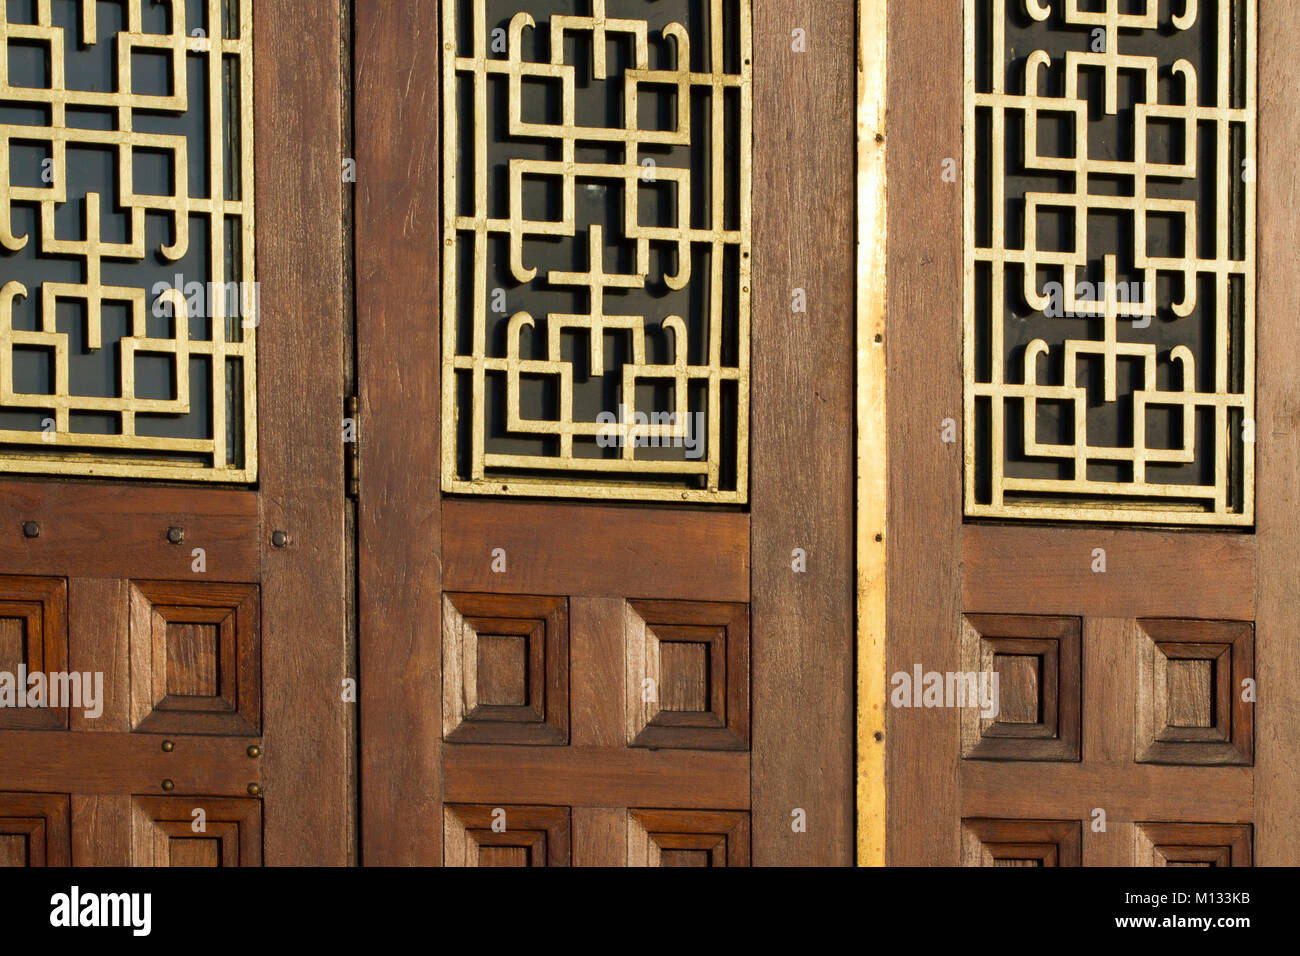 Orientalischen Stil Fenster Grill bietet an den Türen von einem Chinesischen Restaurant in London, Großbritannien Stockfoto